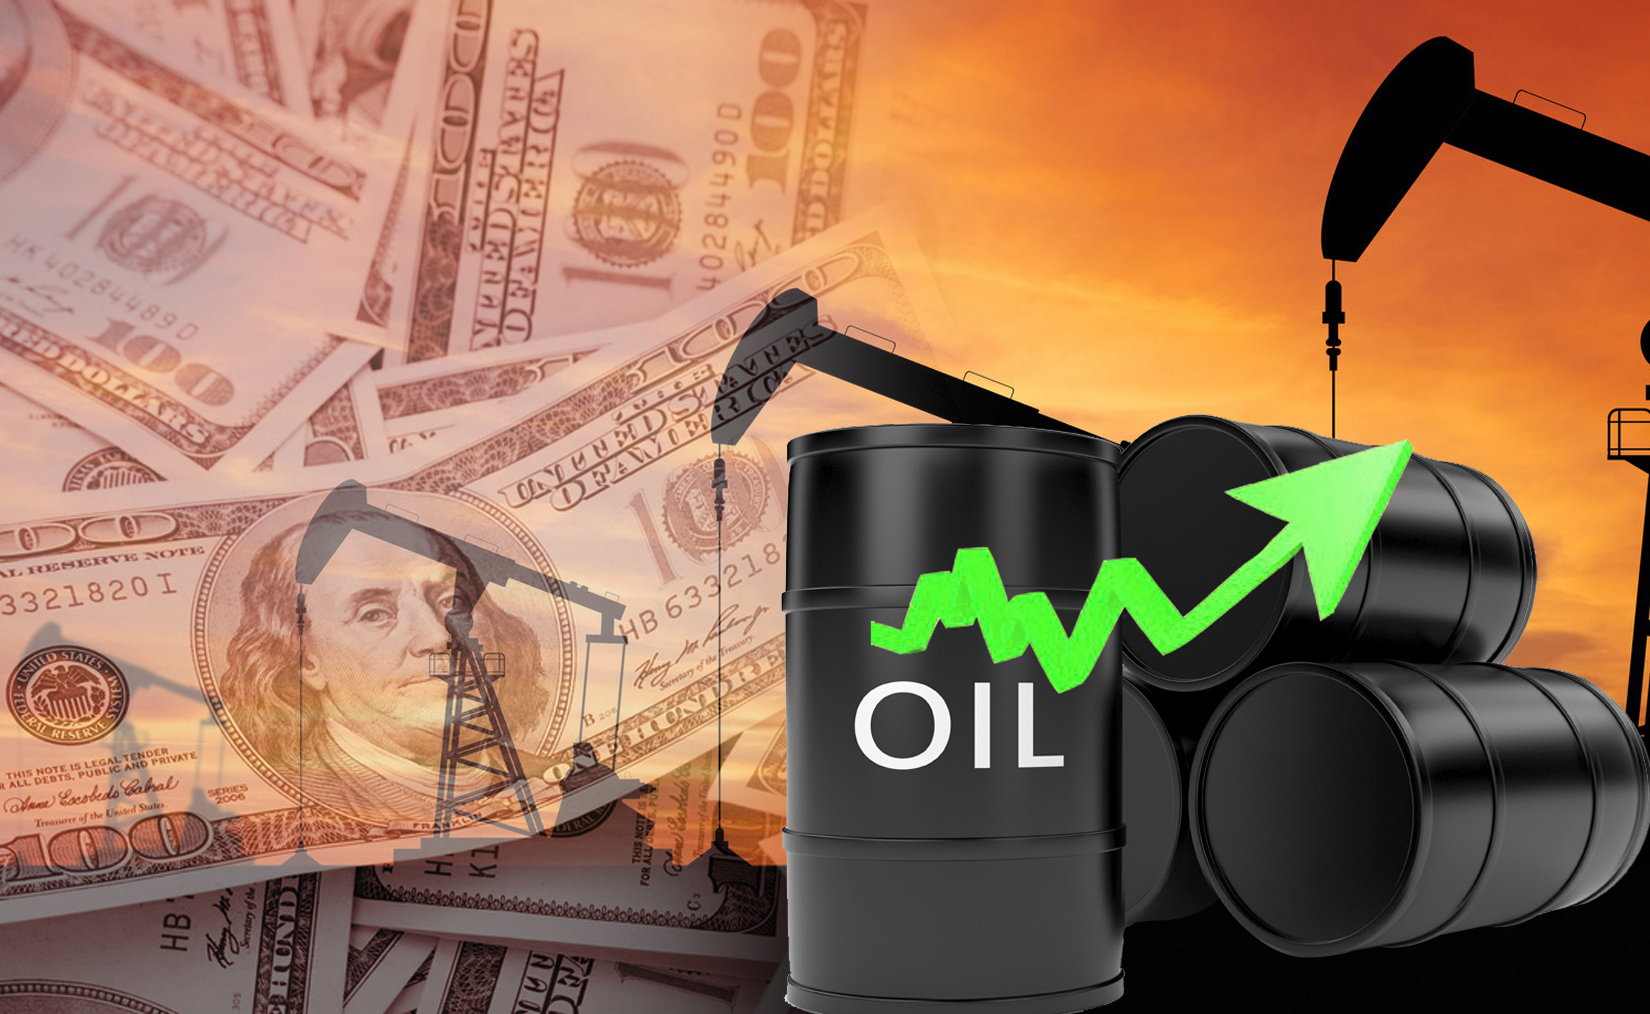 Kuwaiti oil price up 22 cents to USD 55.62 pb - KPC                                                                                                                                                                                                       